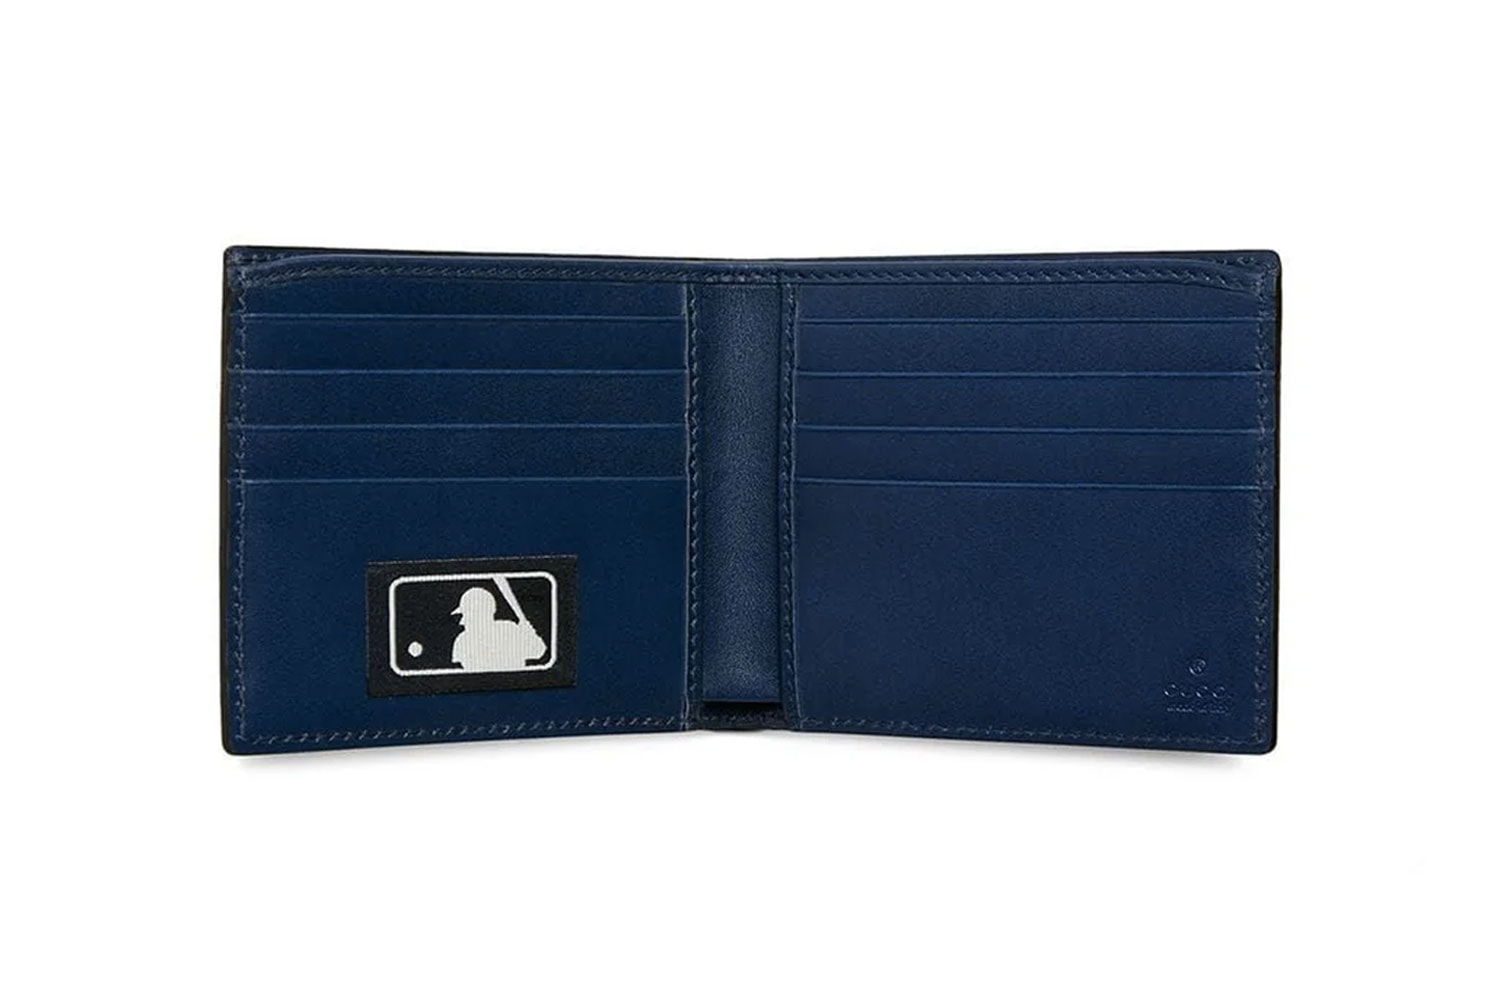 Gucci NY Yankees Patch Wallet Blue MLB Baseball Collaboration bi fold